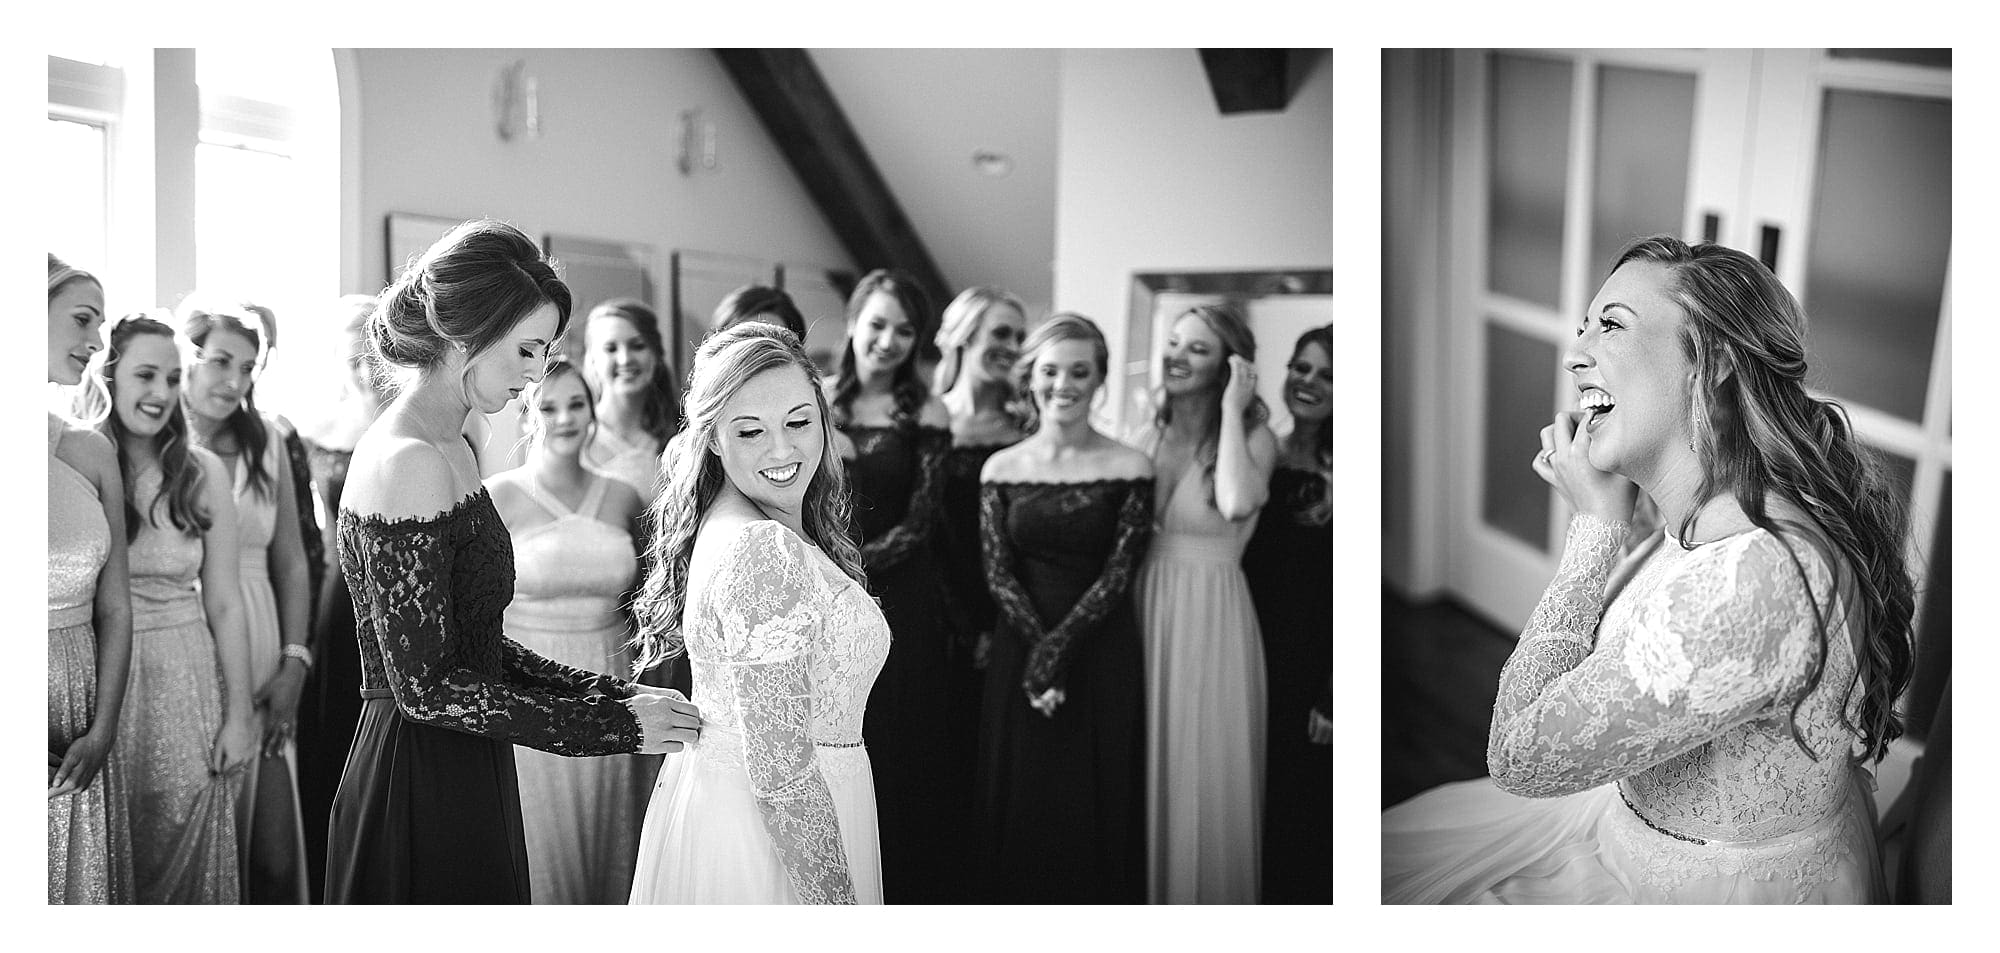 Chestnut Ridge Bridal suite with 15 bridesmaids